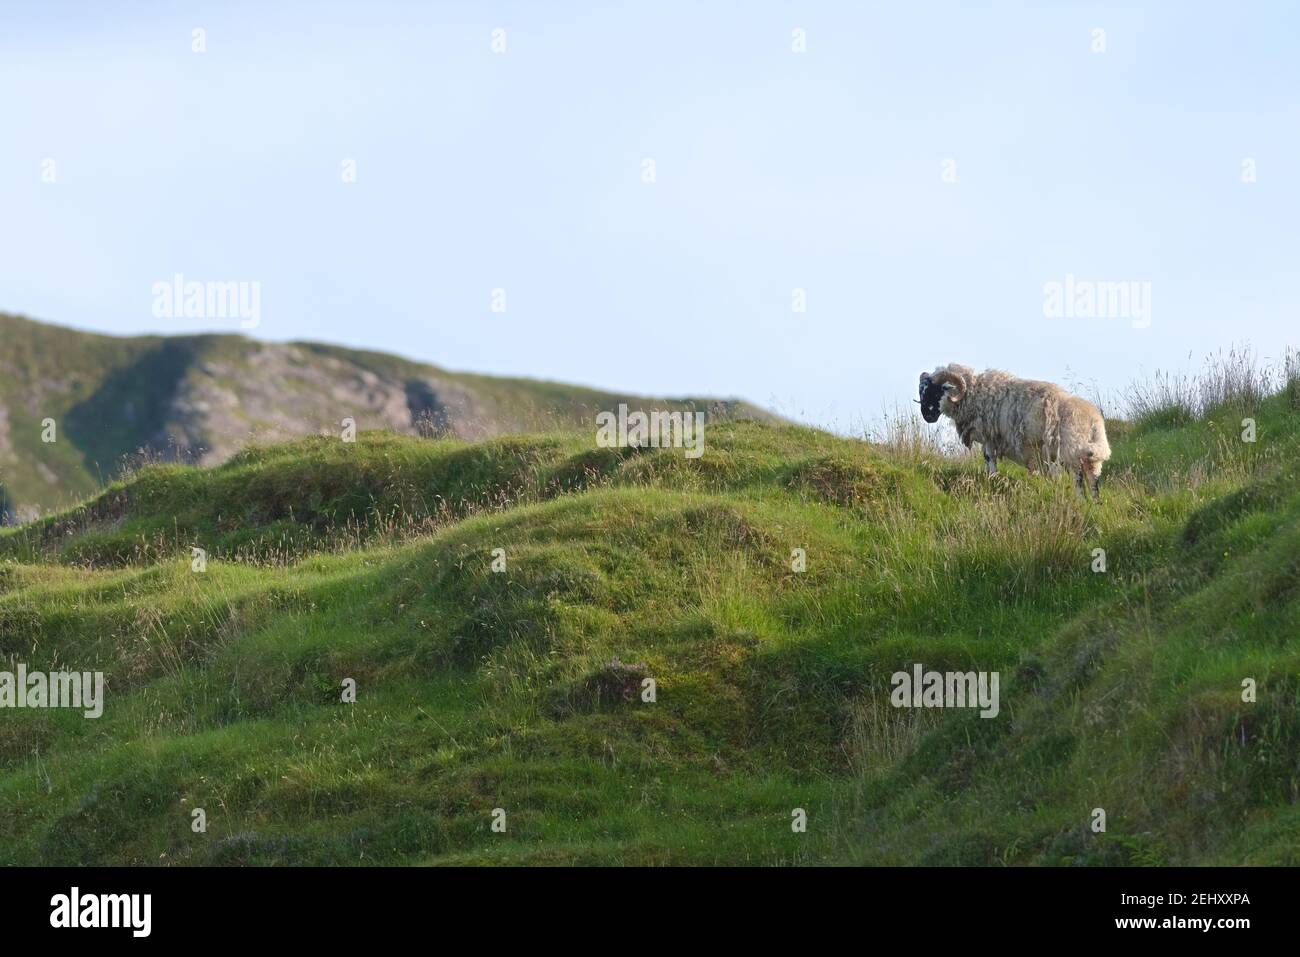 La luz del sol de la noche ilumina a esta oveja blanca con cuernos rizos, ya que se ve a la izquierda de la cima de una colina verde. Espacio de copia y el tiempo soleado sobre hierba larga Foto de stock